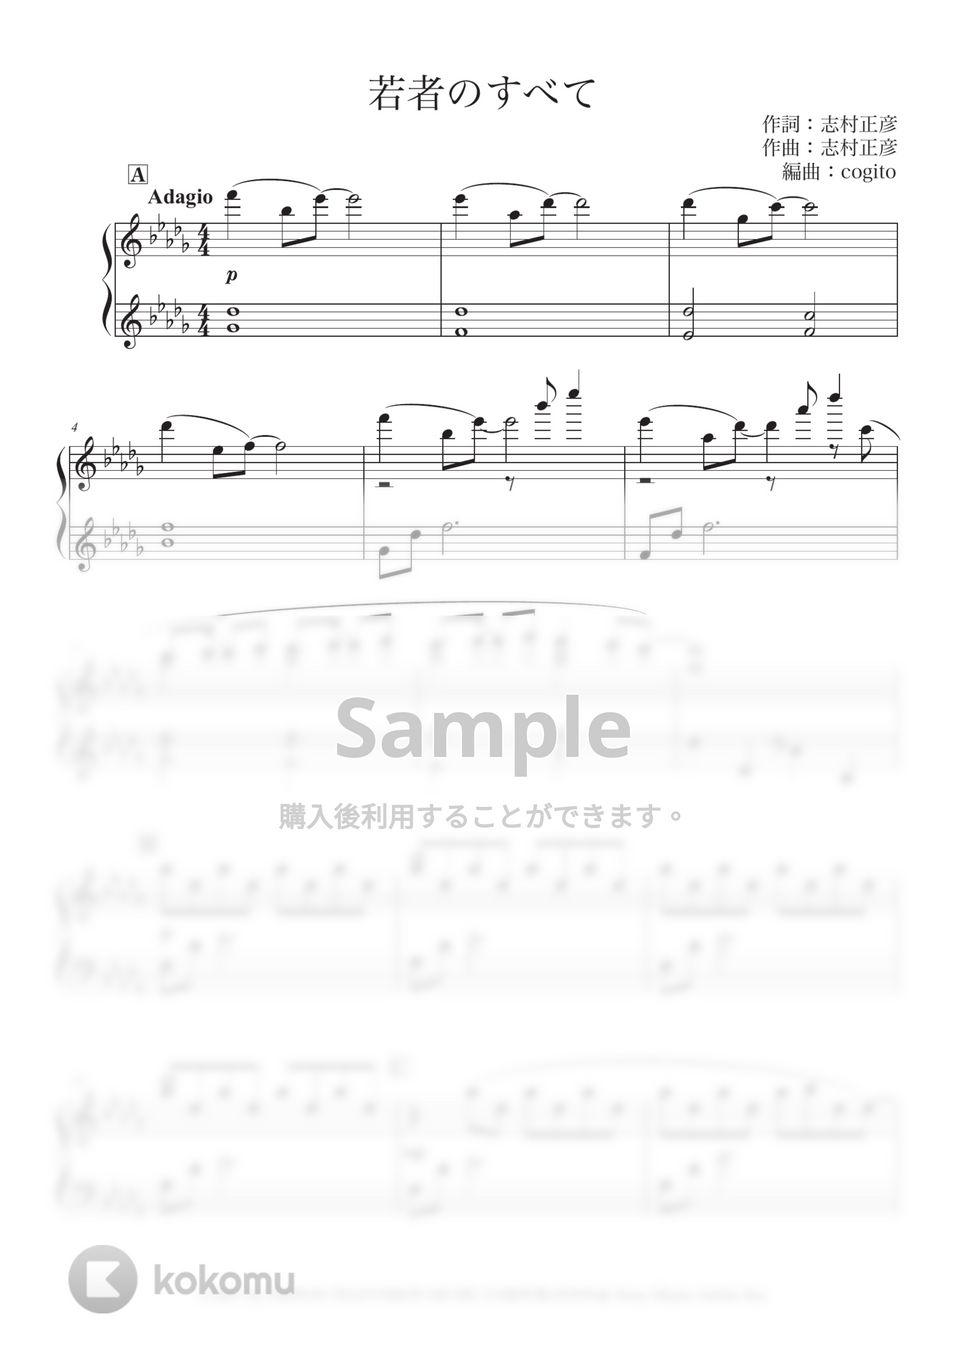 志村 正彦 - 若者のすべて (しっとりBGM / フジファブリック / ピアノ / アレンジ) by コギト